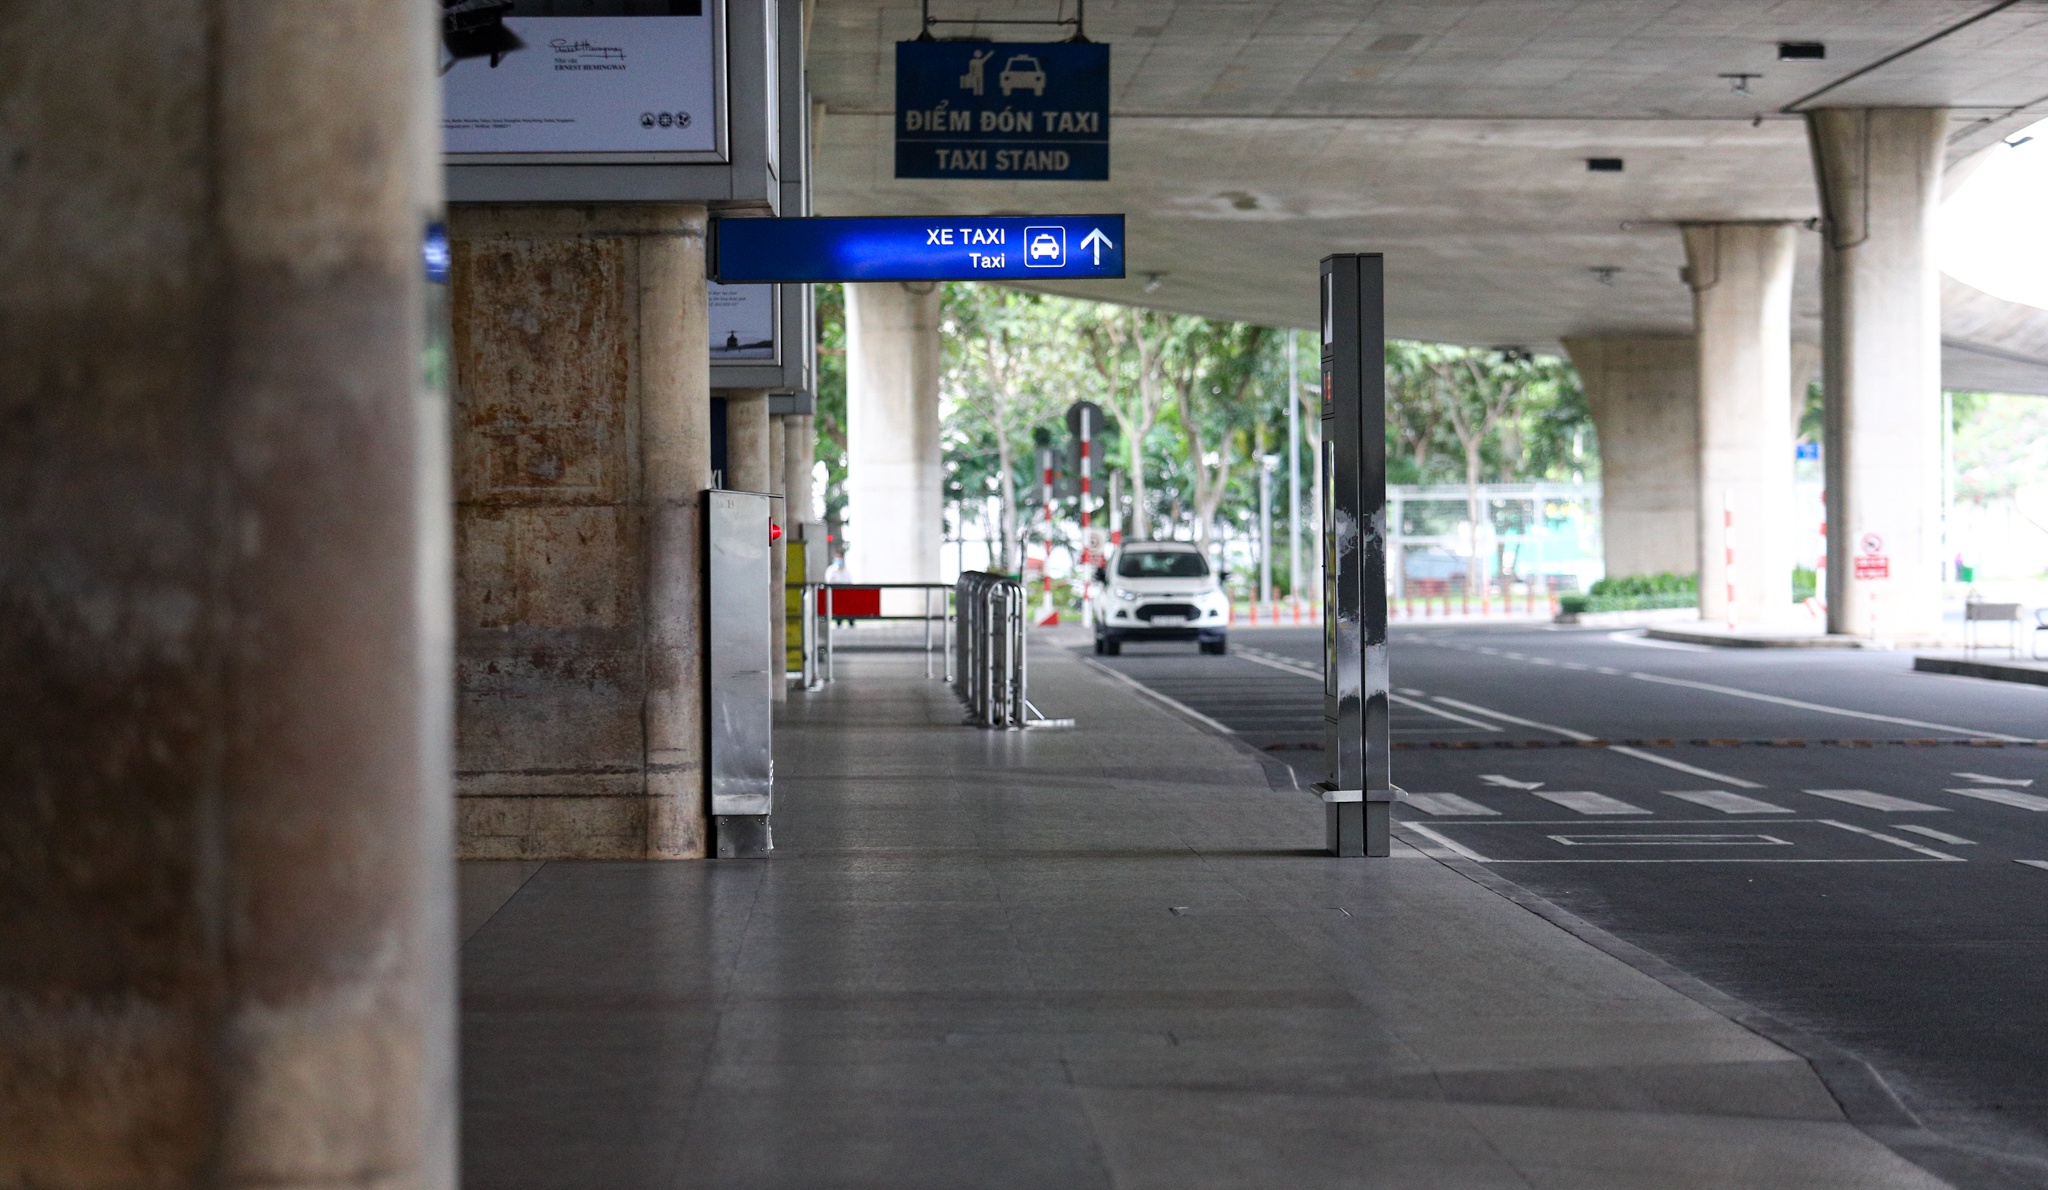 Cảnh vắng lặng chưa từng có ở ga quốc tế Tân Sơn Nhất dịp Tết - Ảnh 2.